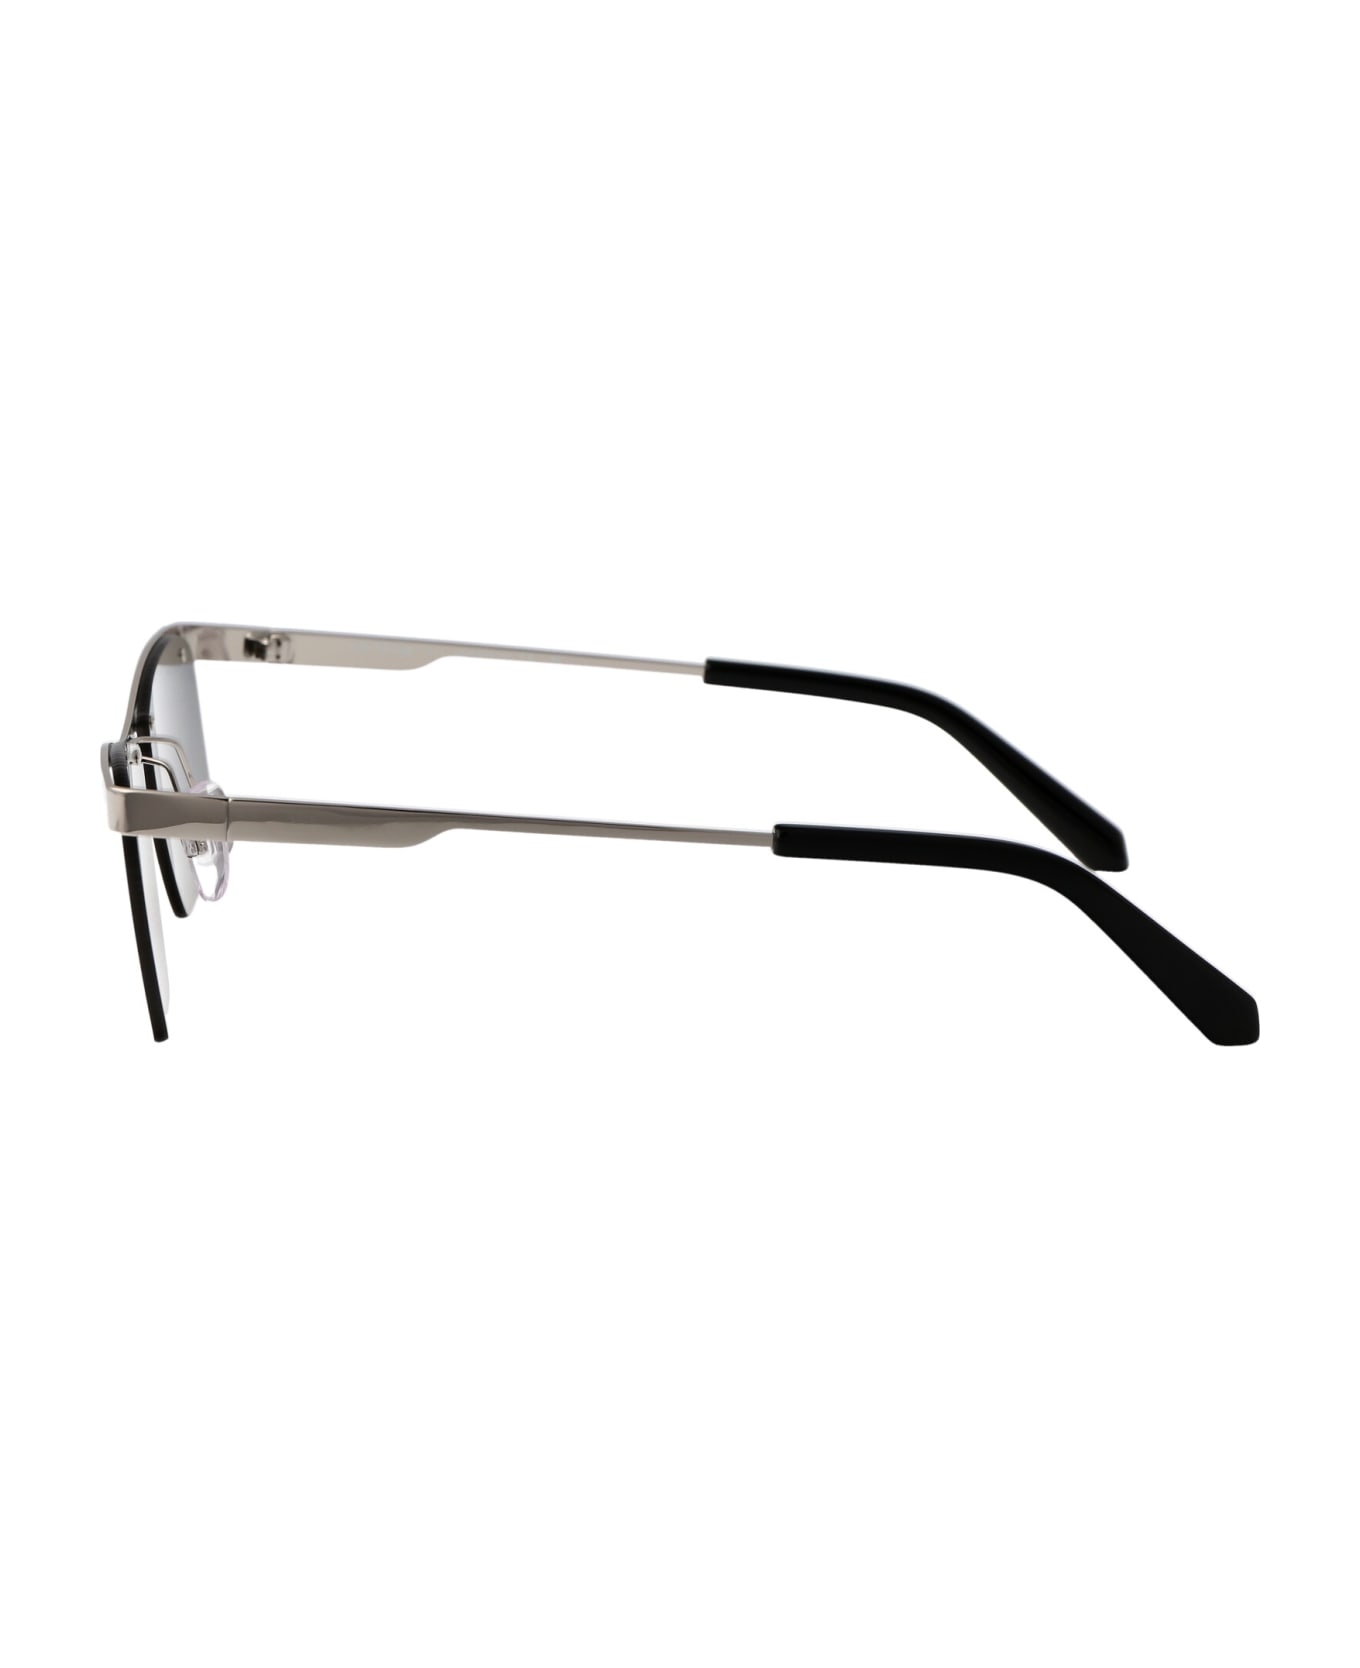 Off-White Rimini Sunglasses - 7272 SILVER